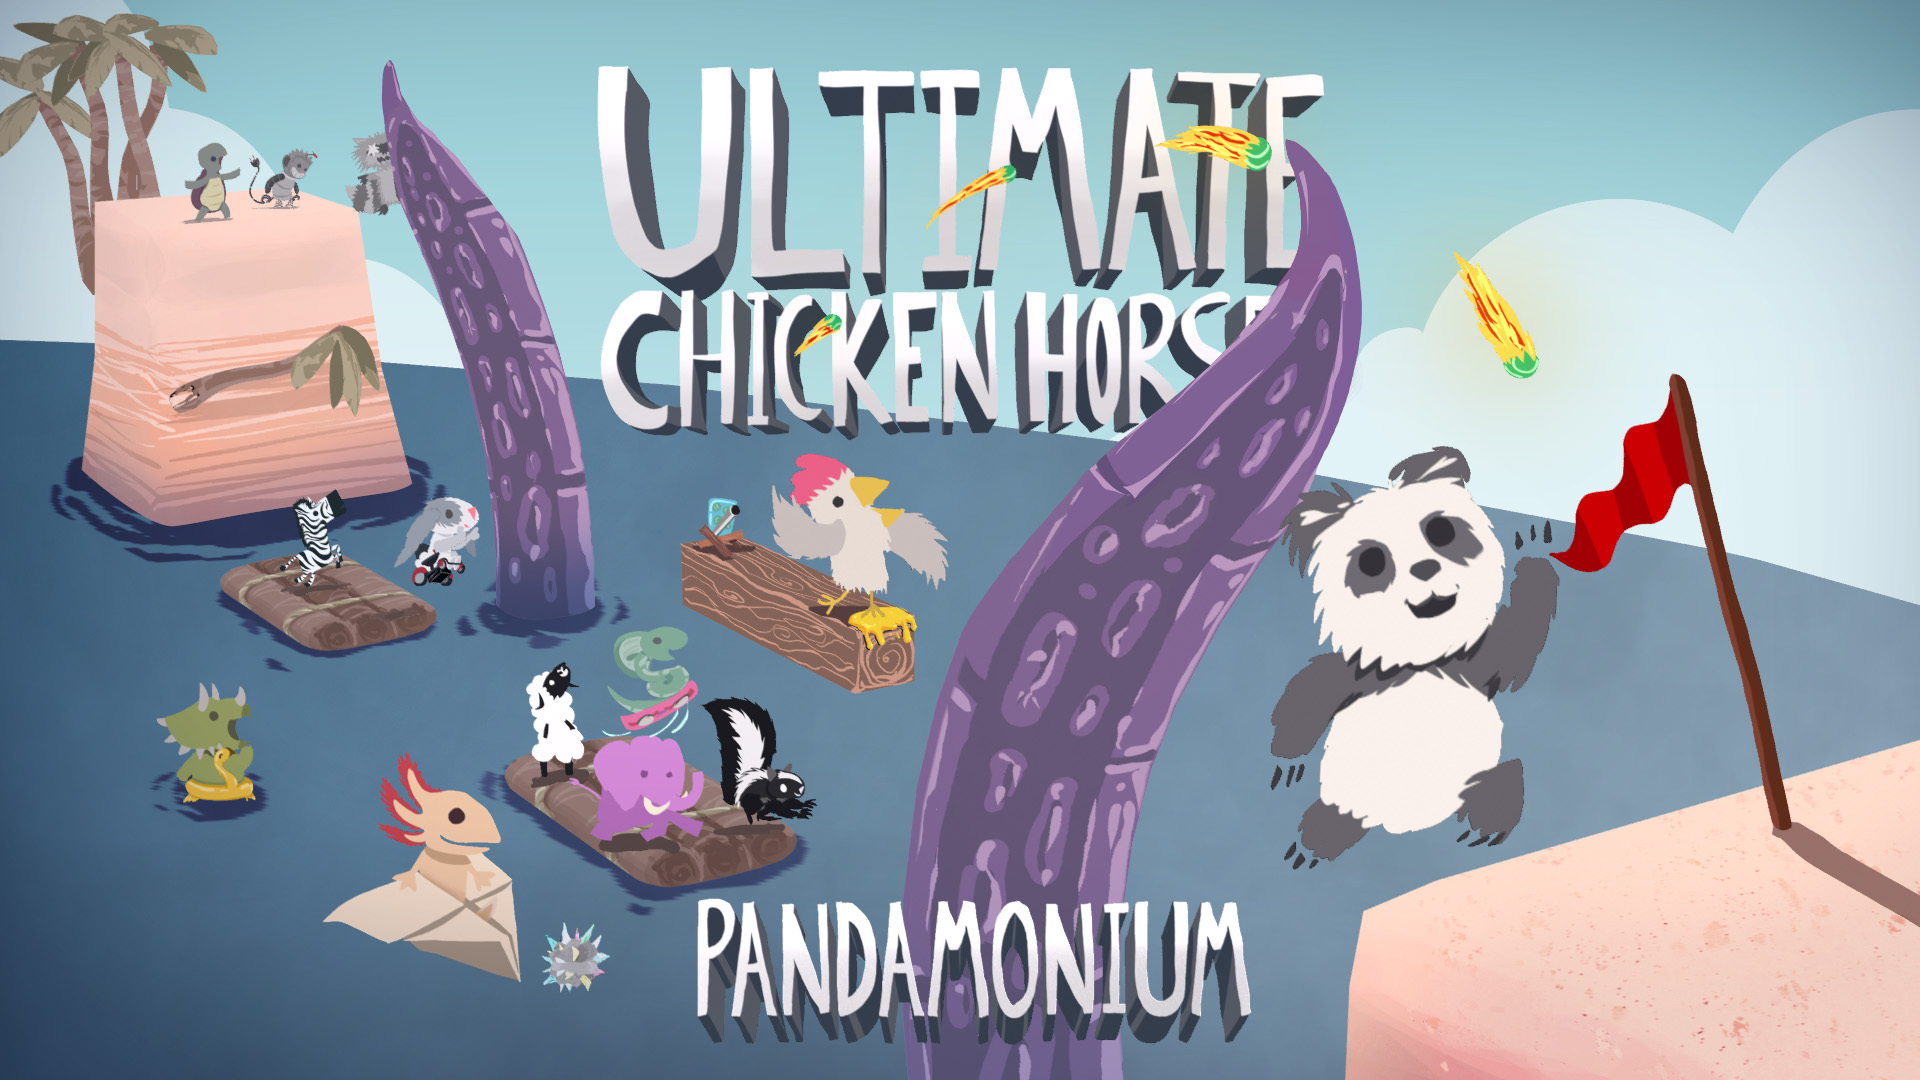 Ultimate Chicken Horse Pandamonium update